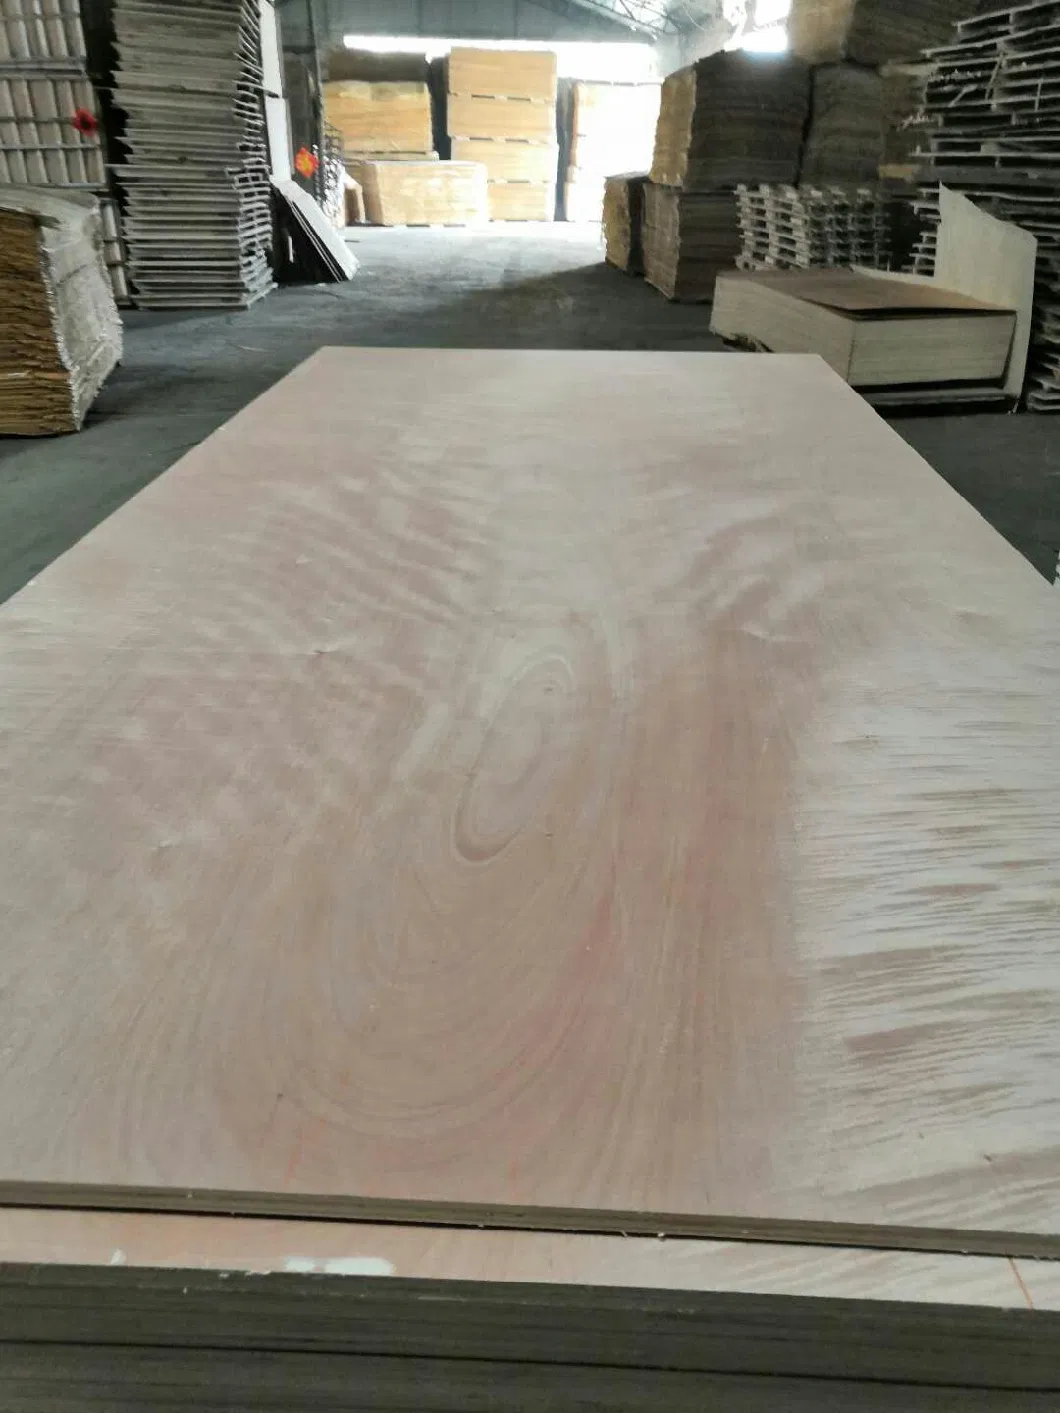 Okumen/ Bintangor/Pine Plywood Floor Board with Yellow Color